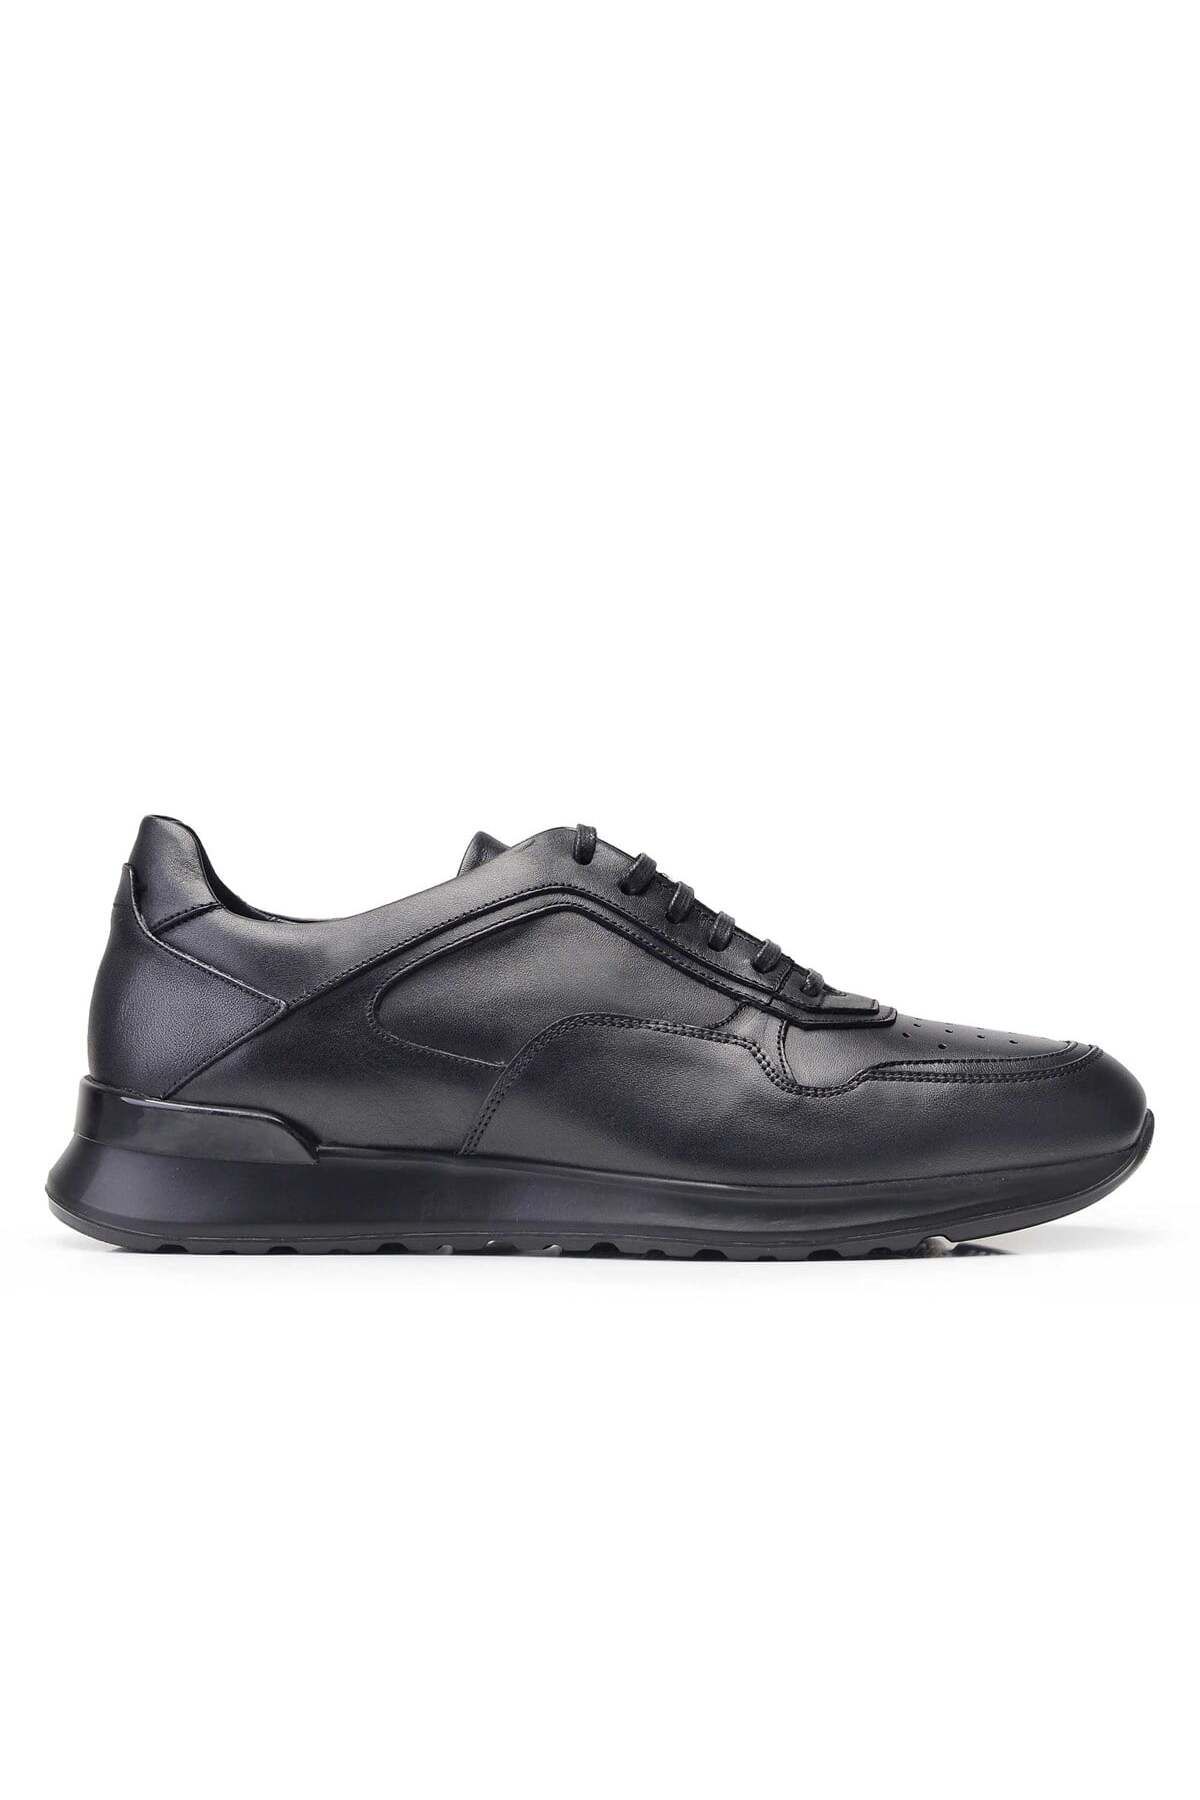 Nevzat Onay Siyah Sneaker Erkek Ayakkabı -12015-